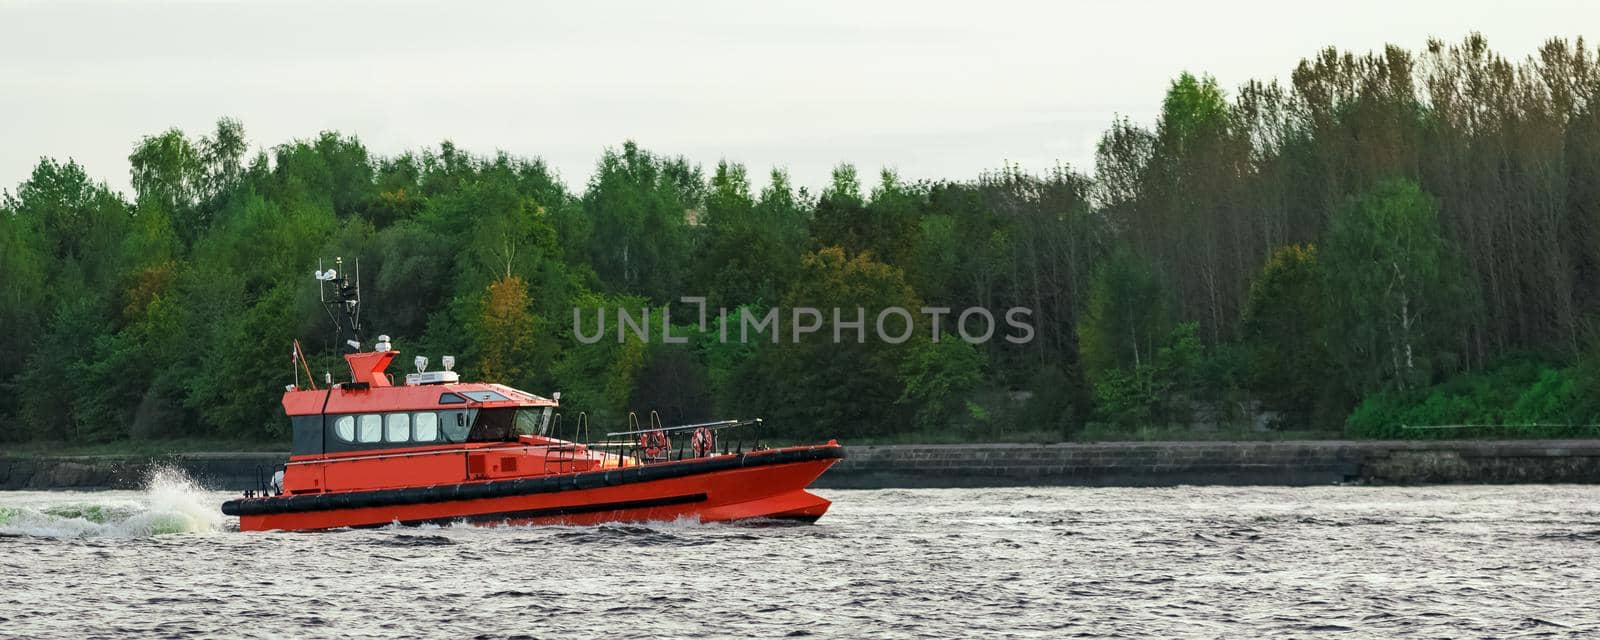 Orange pilot ship by InfinitumProdux